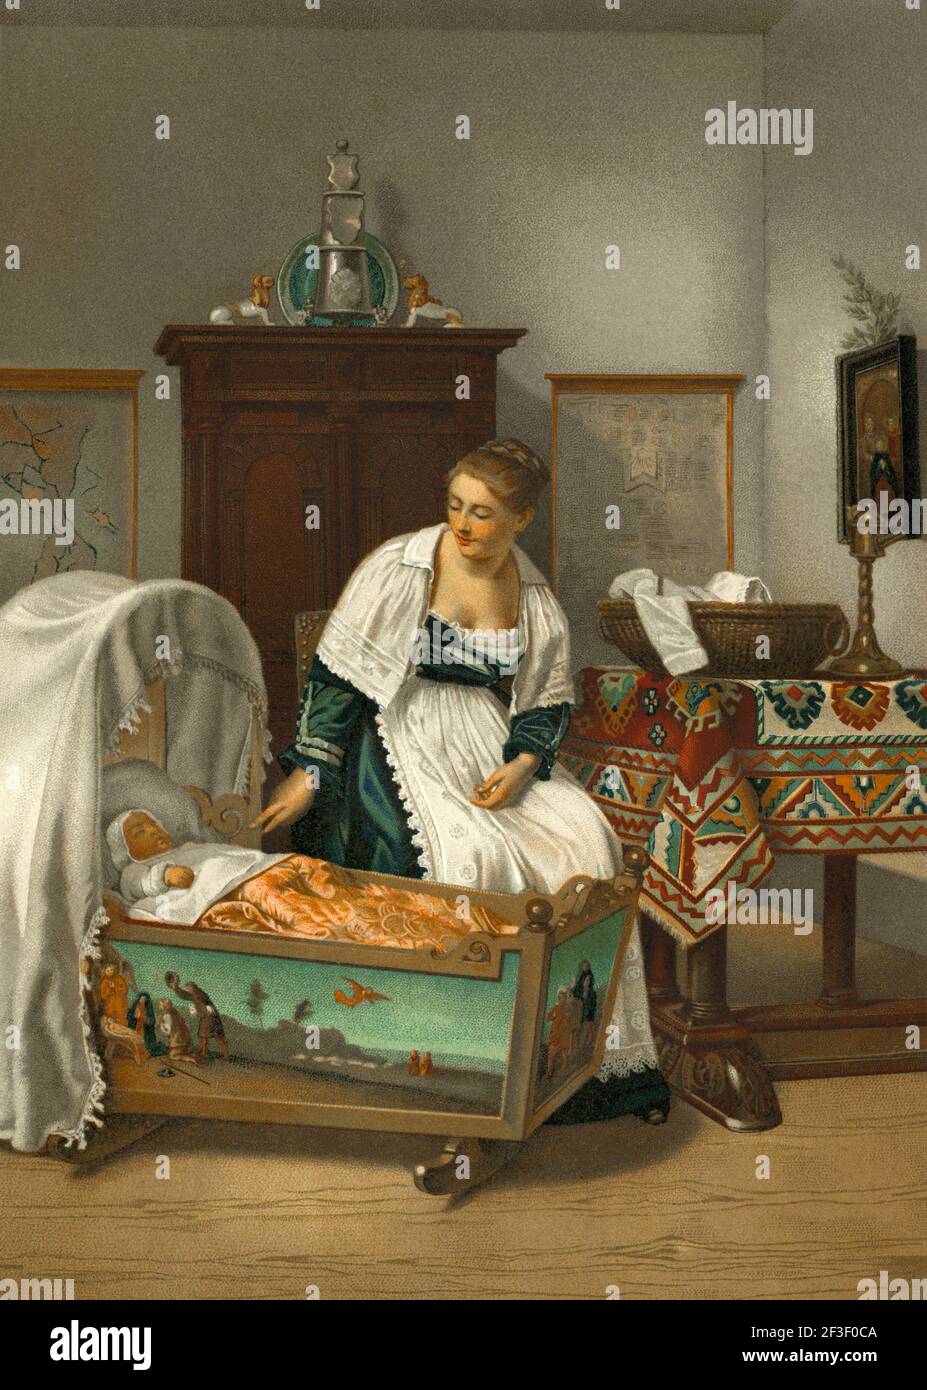 La jeune mère, un tableau de F. Willems. Illustration de la lithographie de couleur de l'ancien XIXe siècle d'El Mundo Ilustrado 1879 Banque D'Images